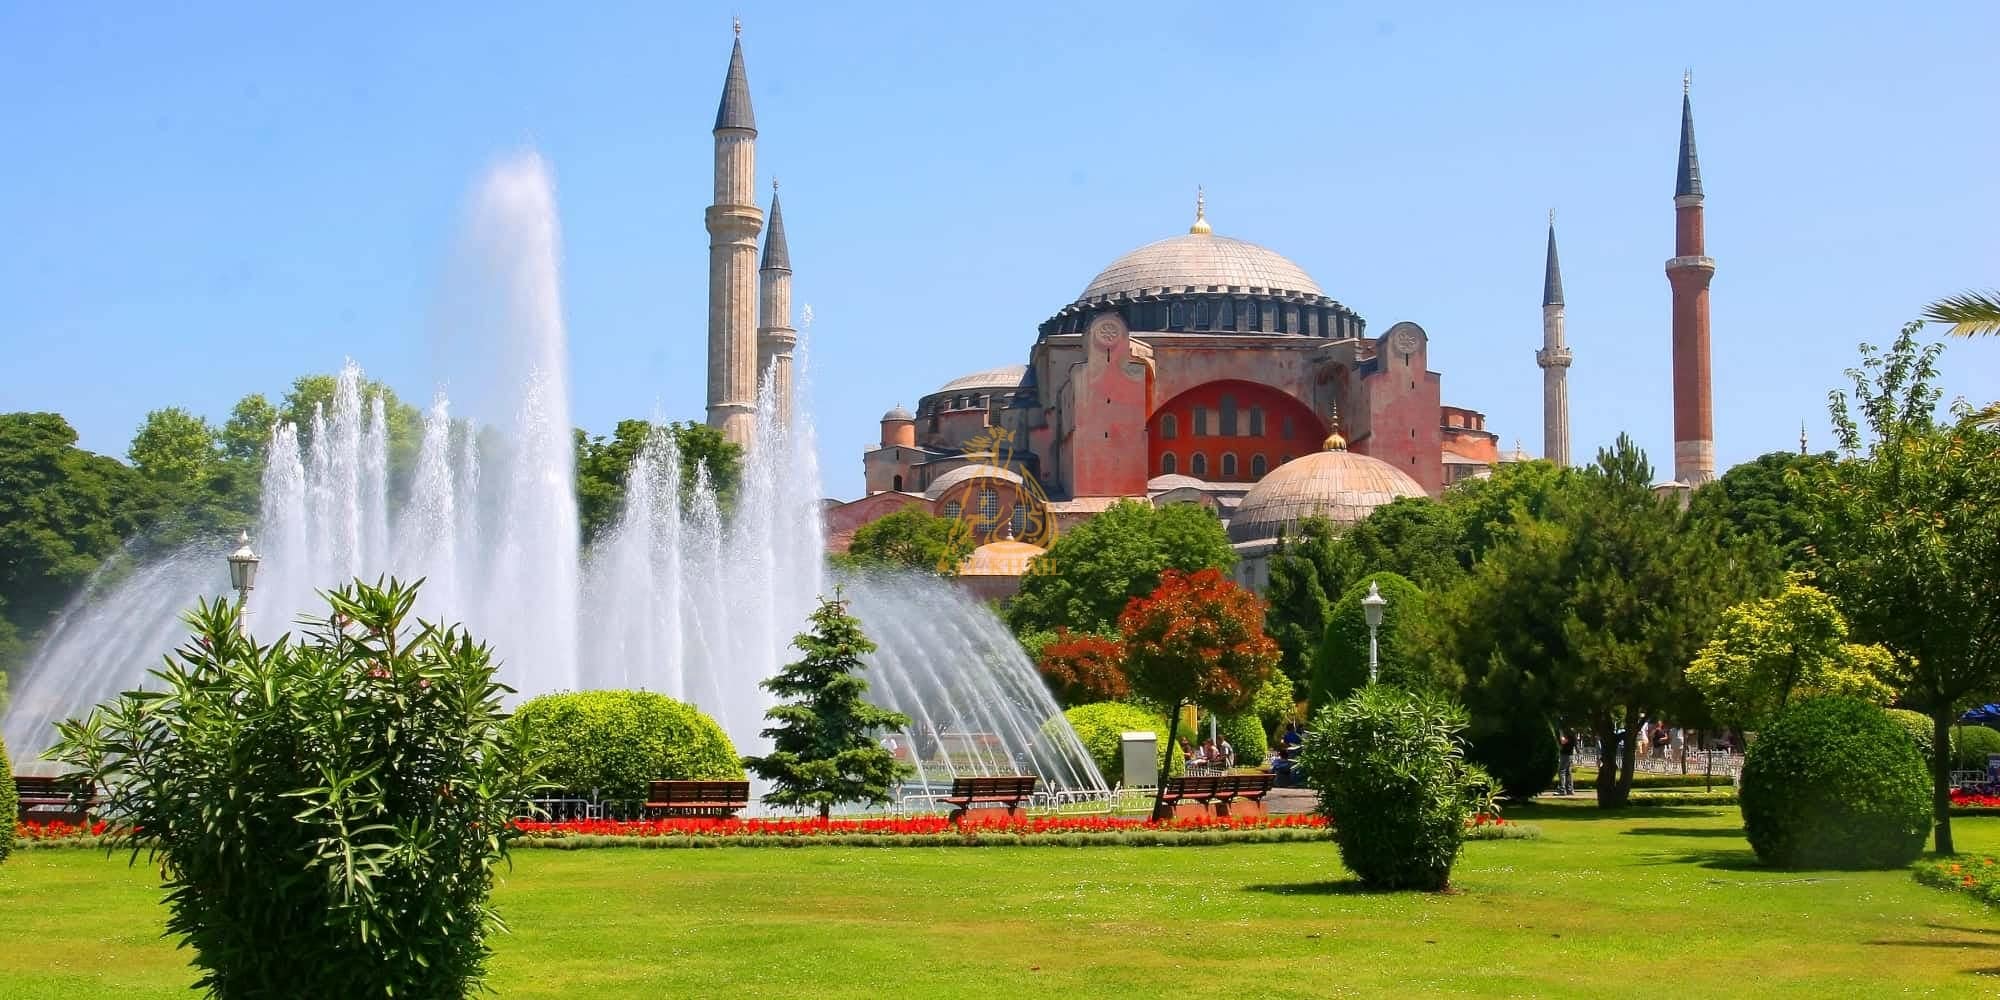 Что делать в Стамбуле Европе? 25 обязательных к посещению мест в Стамбуле